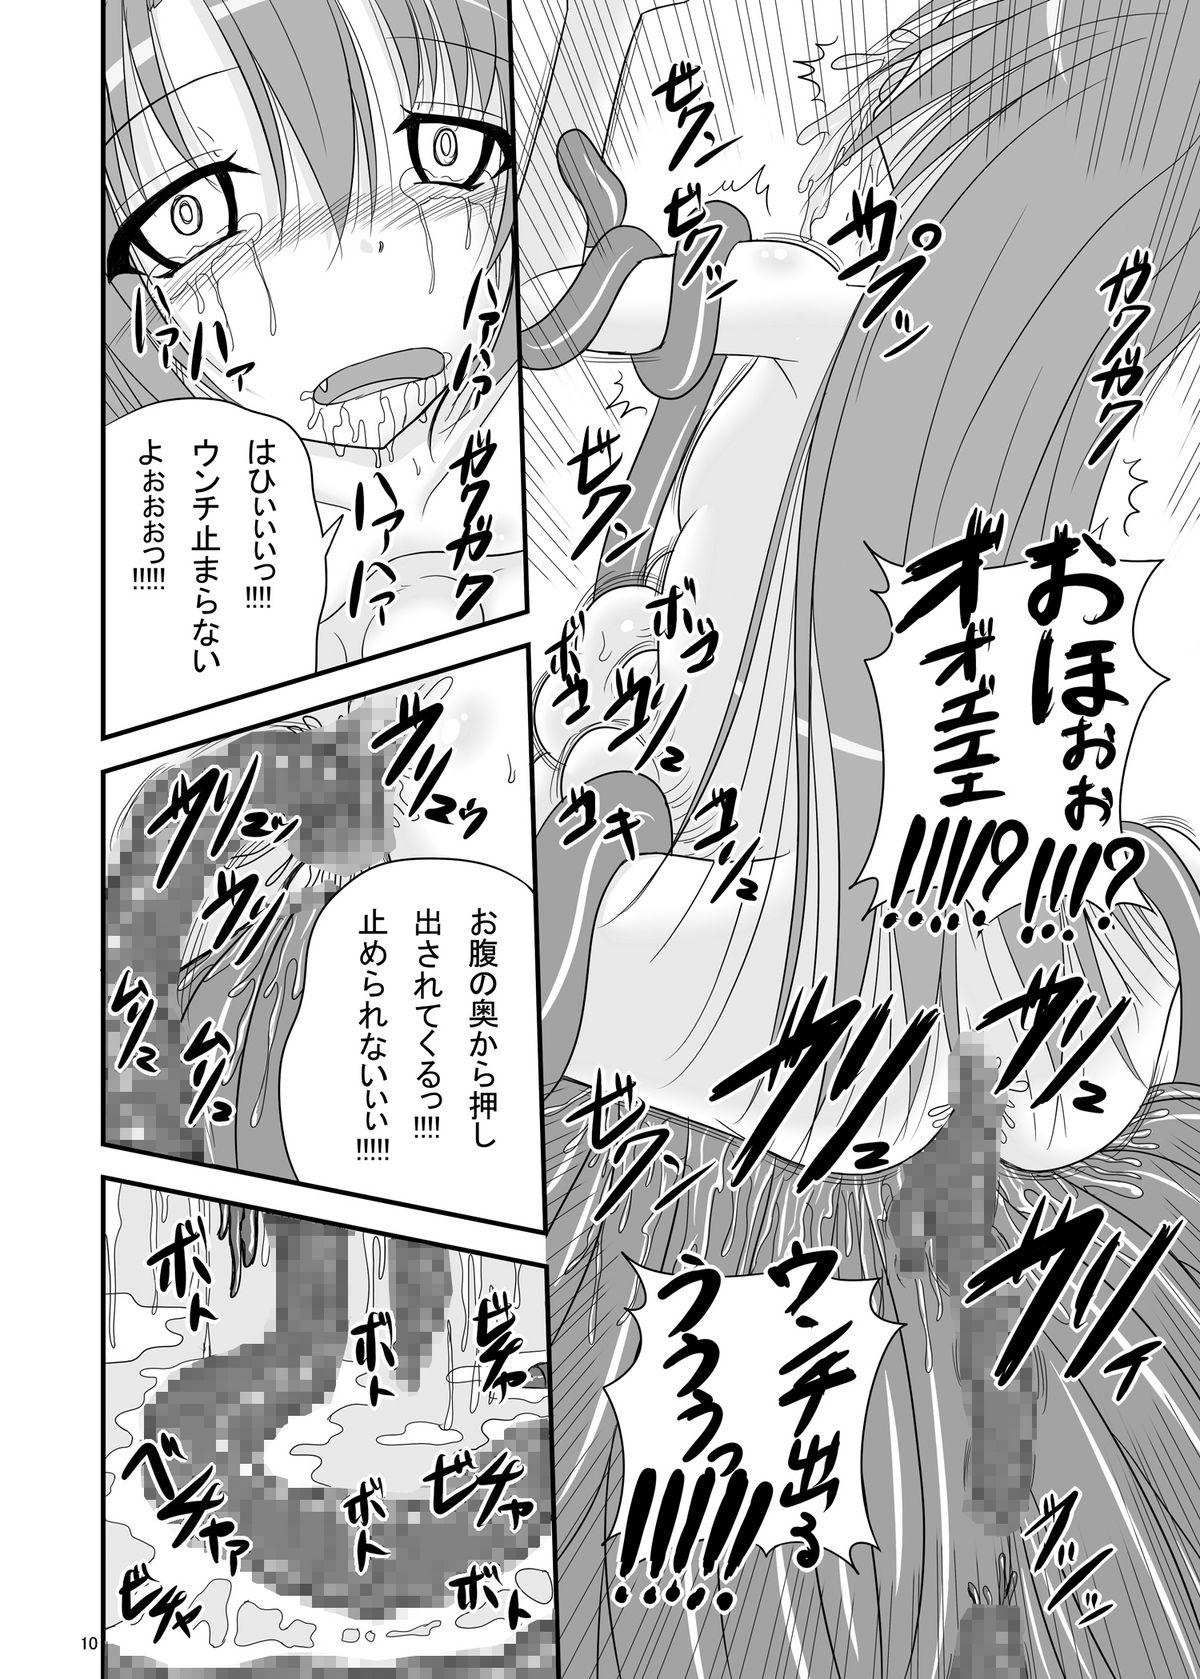 Caught Itsuka Zenshin Funsha no Kuso Usagi - Itsuka tenma no kuro usagi Stepbrother - Page 10